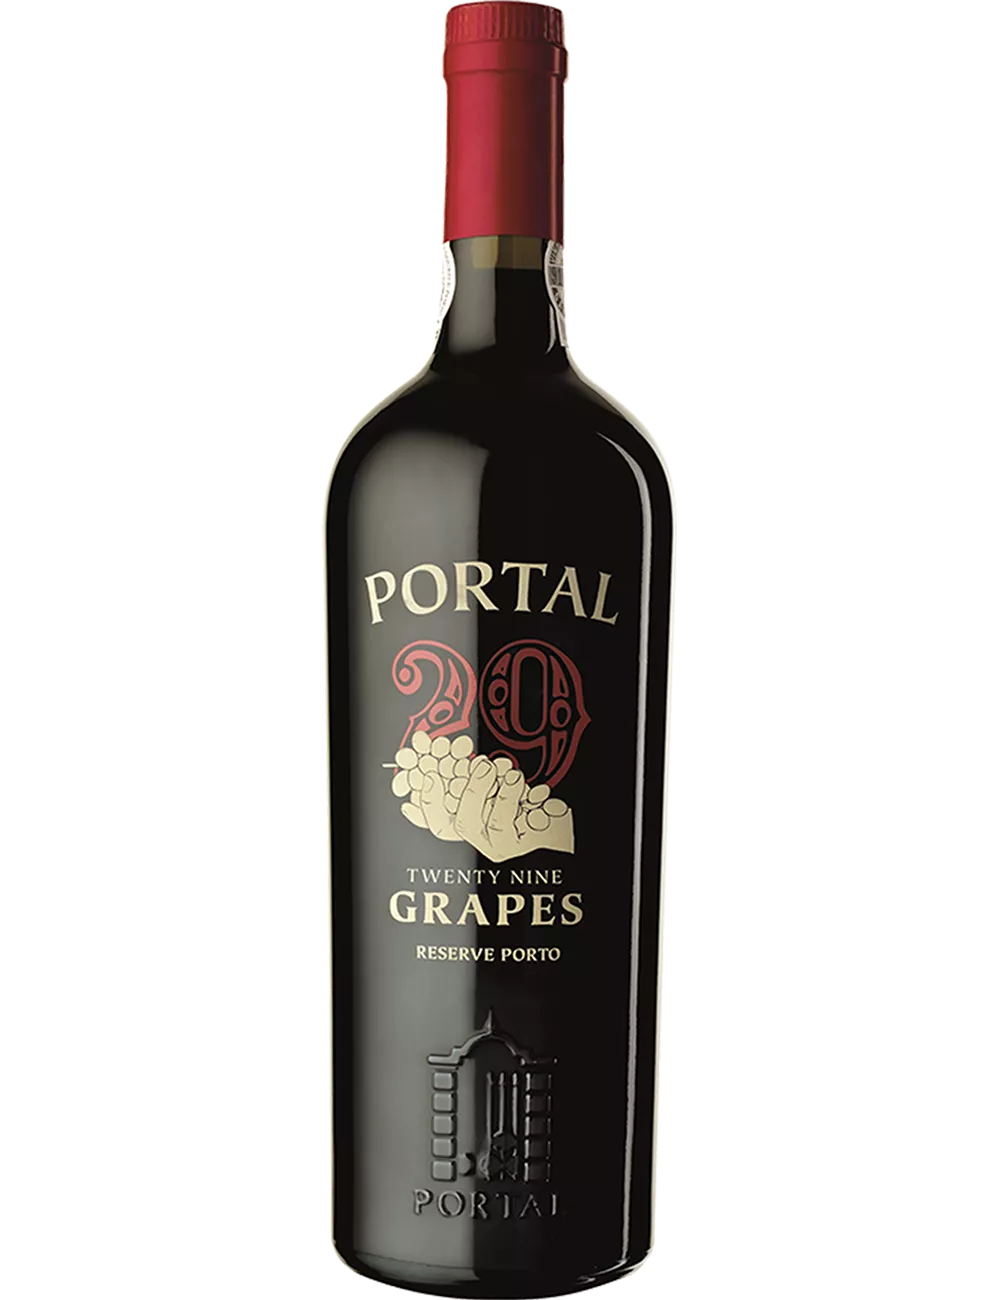 Quinta do Portal - 29 Grapes Ruby - Porto